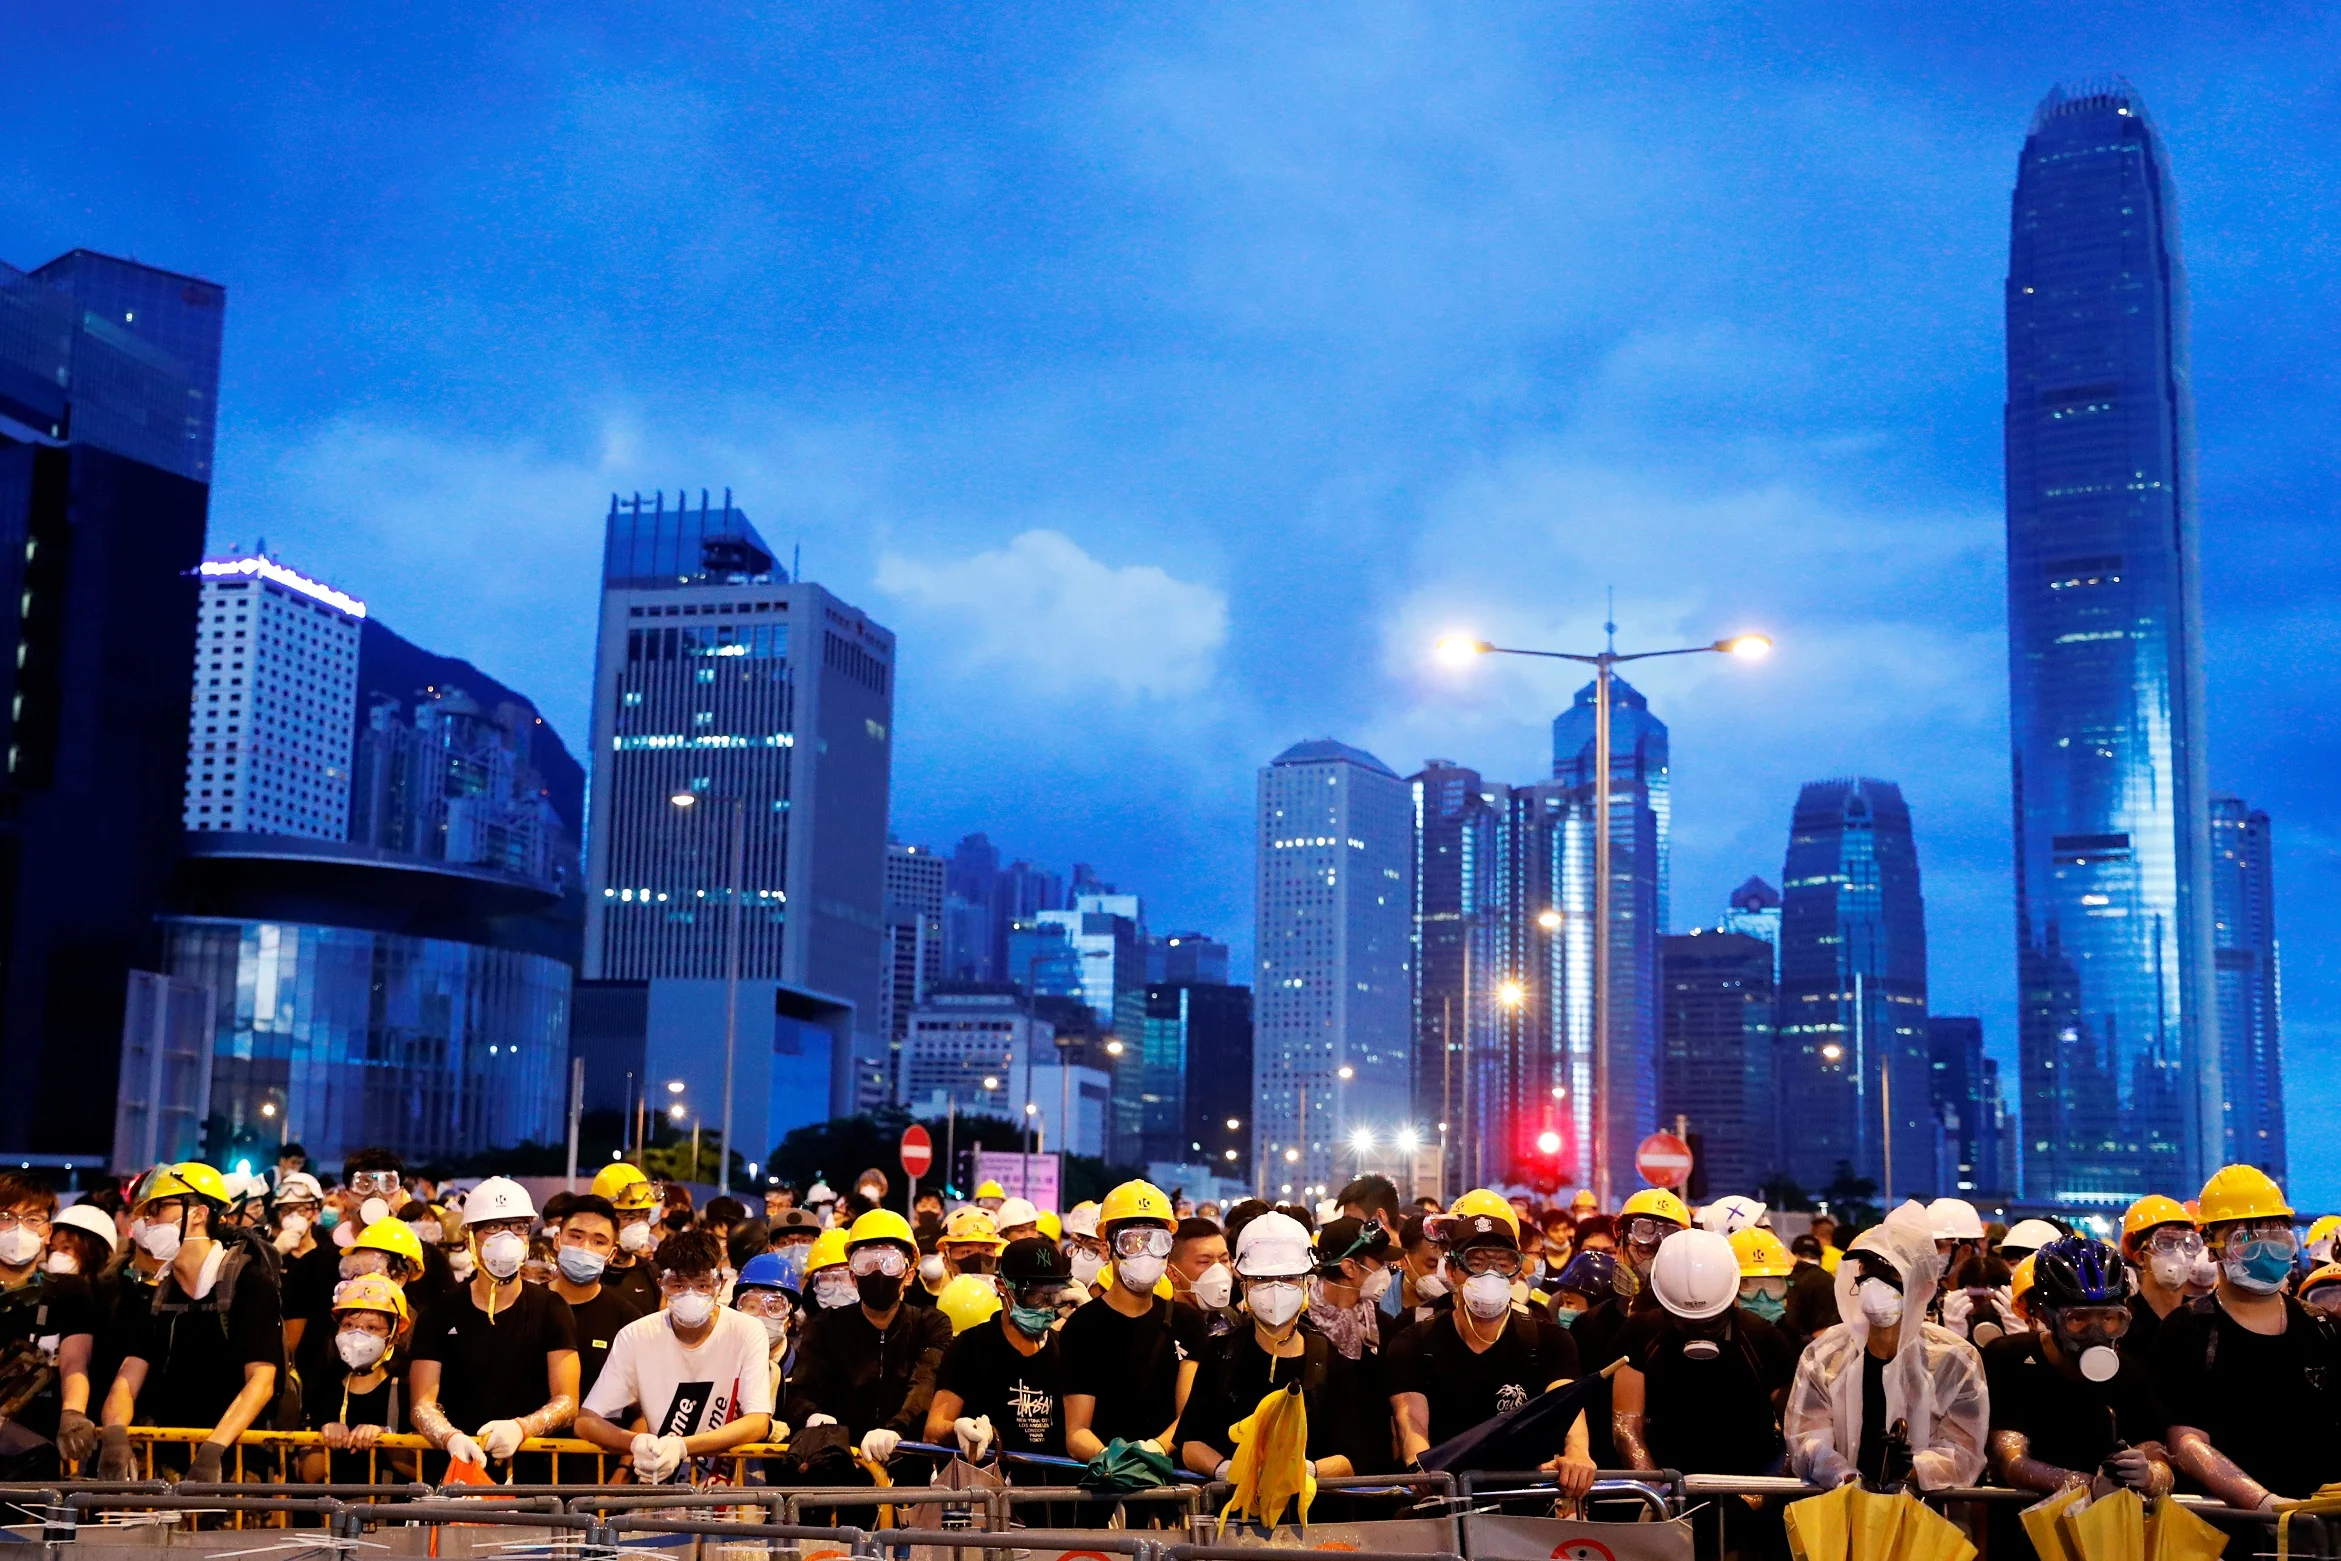 הפגנה בהונג קונג בעקבות הצעת חוק ההסגרה לסין